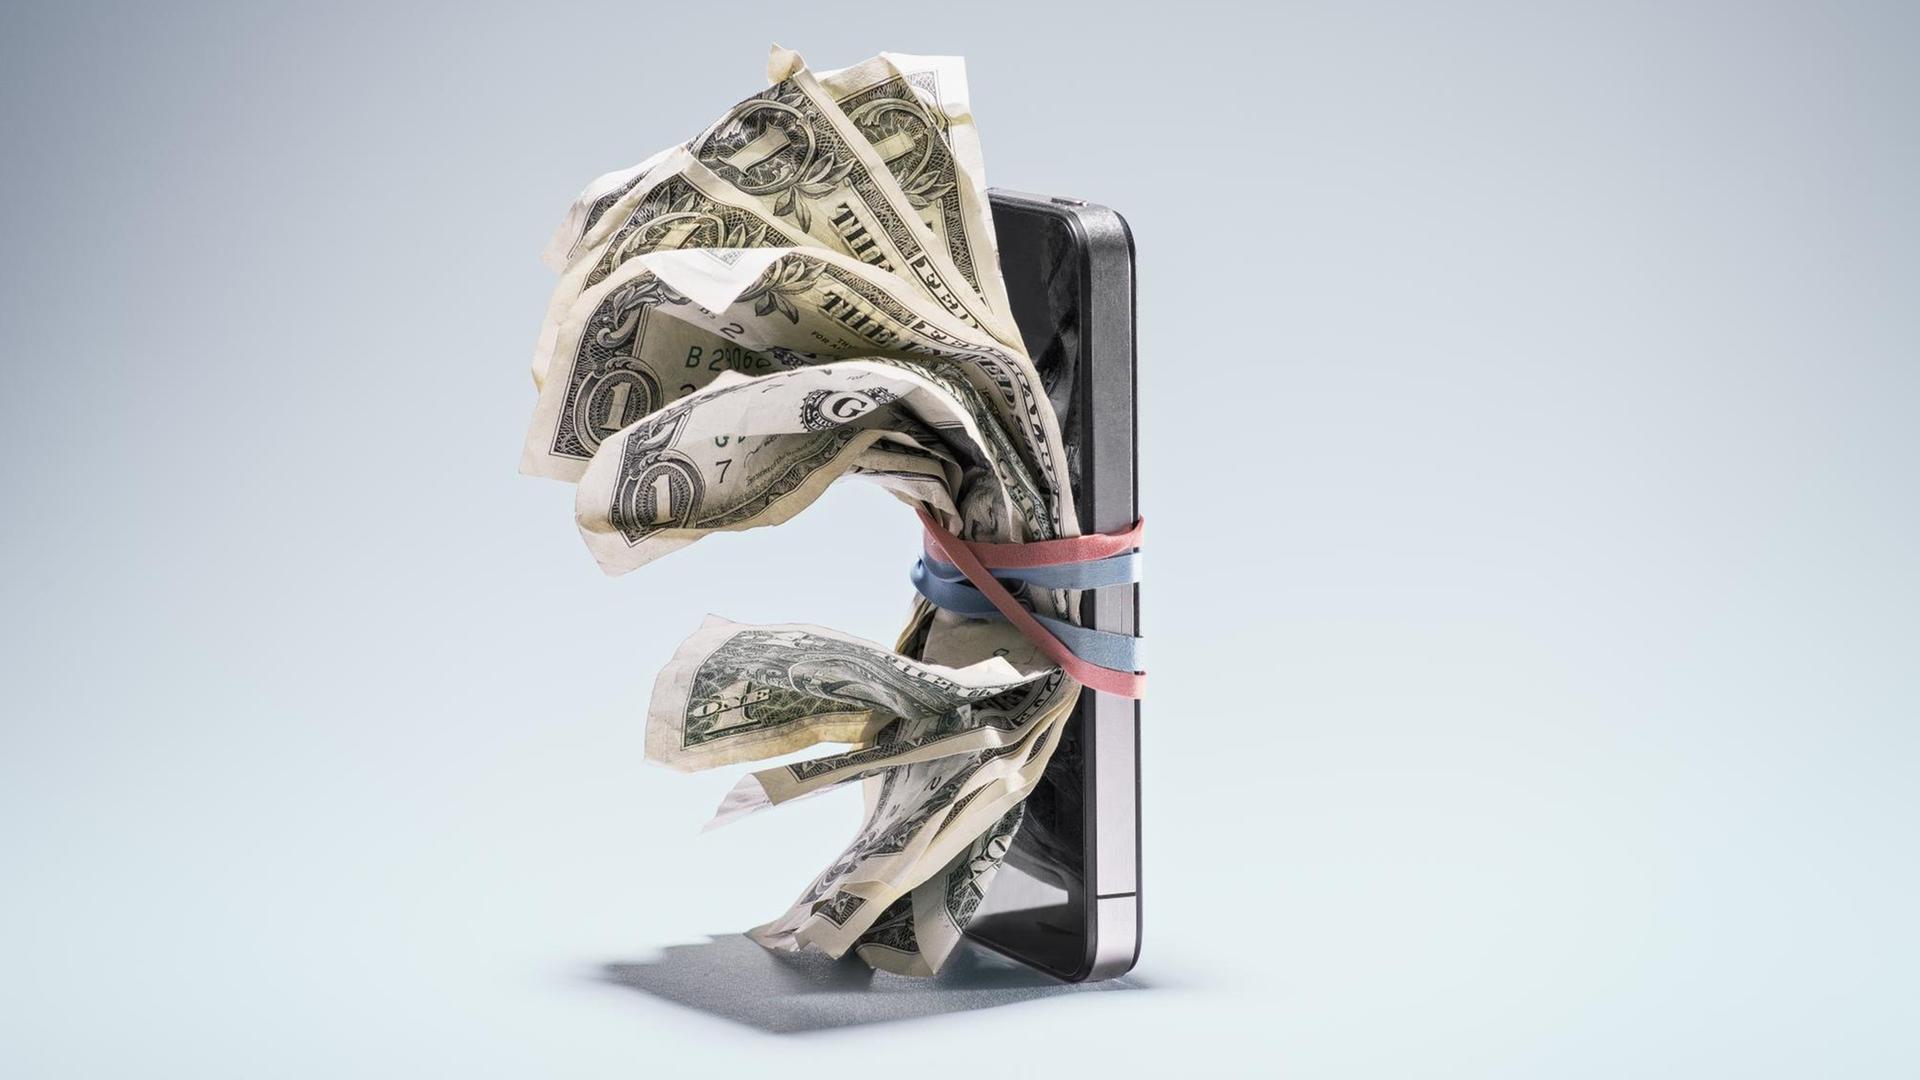 Illustration für eine bargeldlose Gesellschaft: Zerknitterte Dollarscheine sind mit Gummibändern an einem Smartphone befestigt.